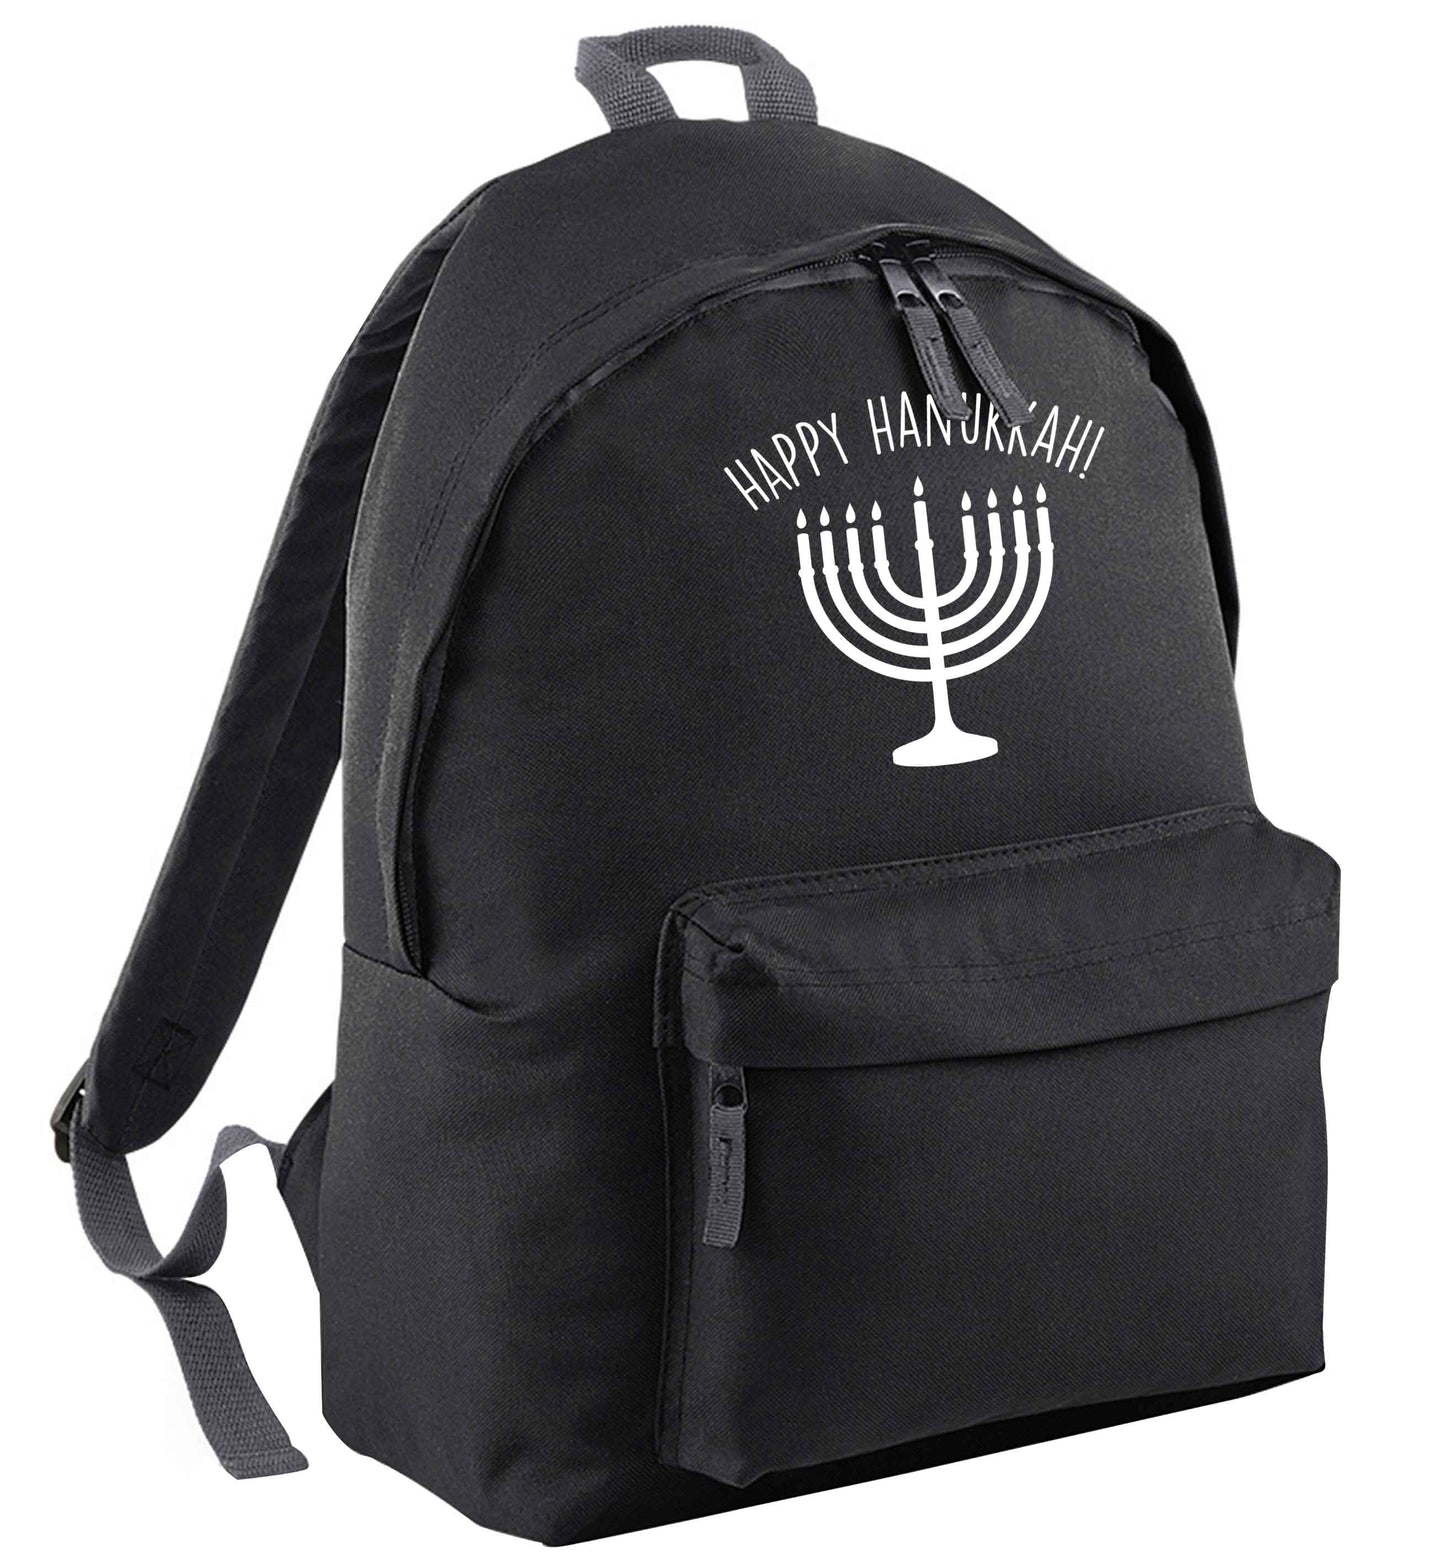 Happy hanukkah | Children's backpack